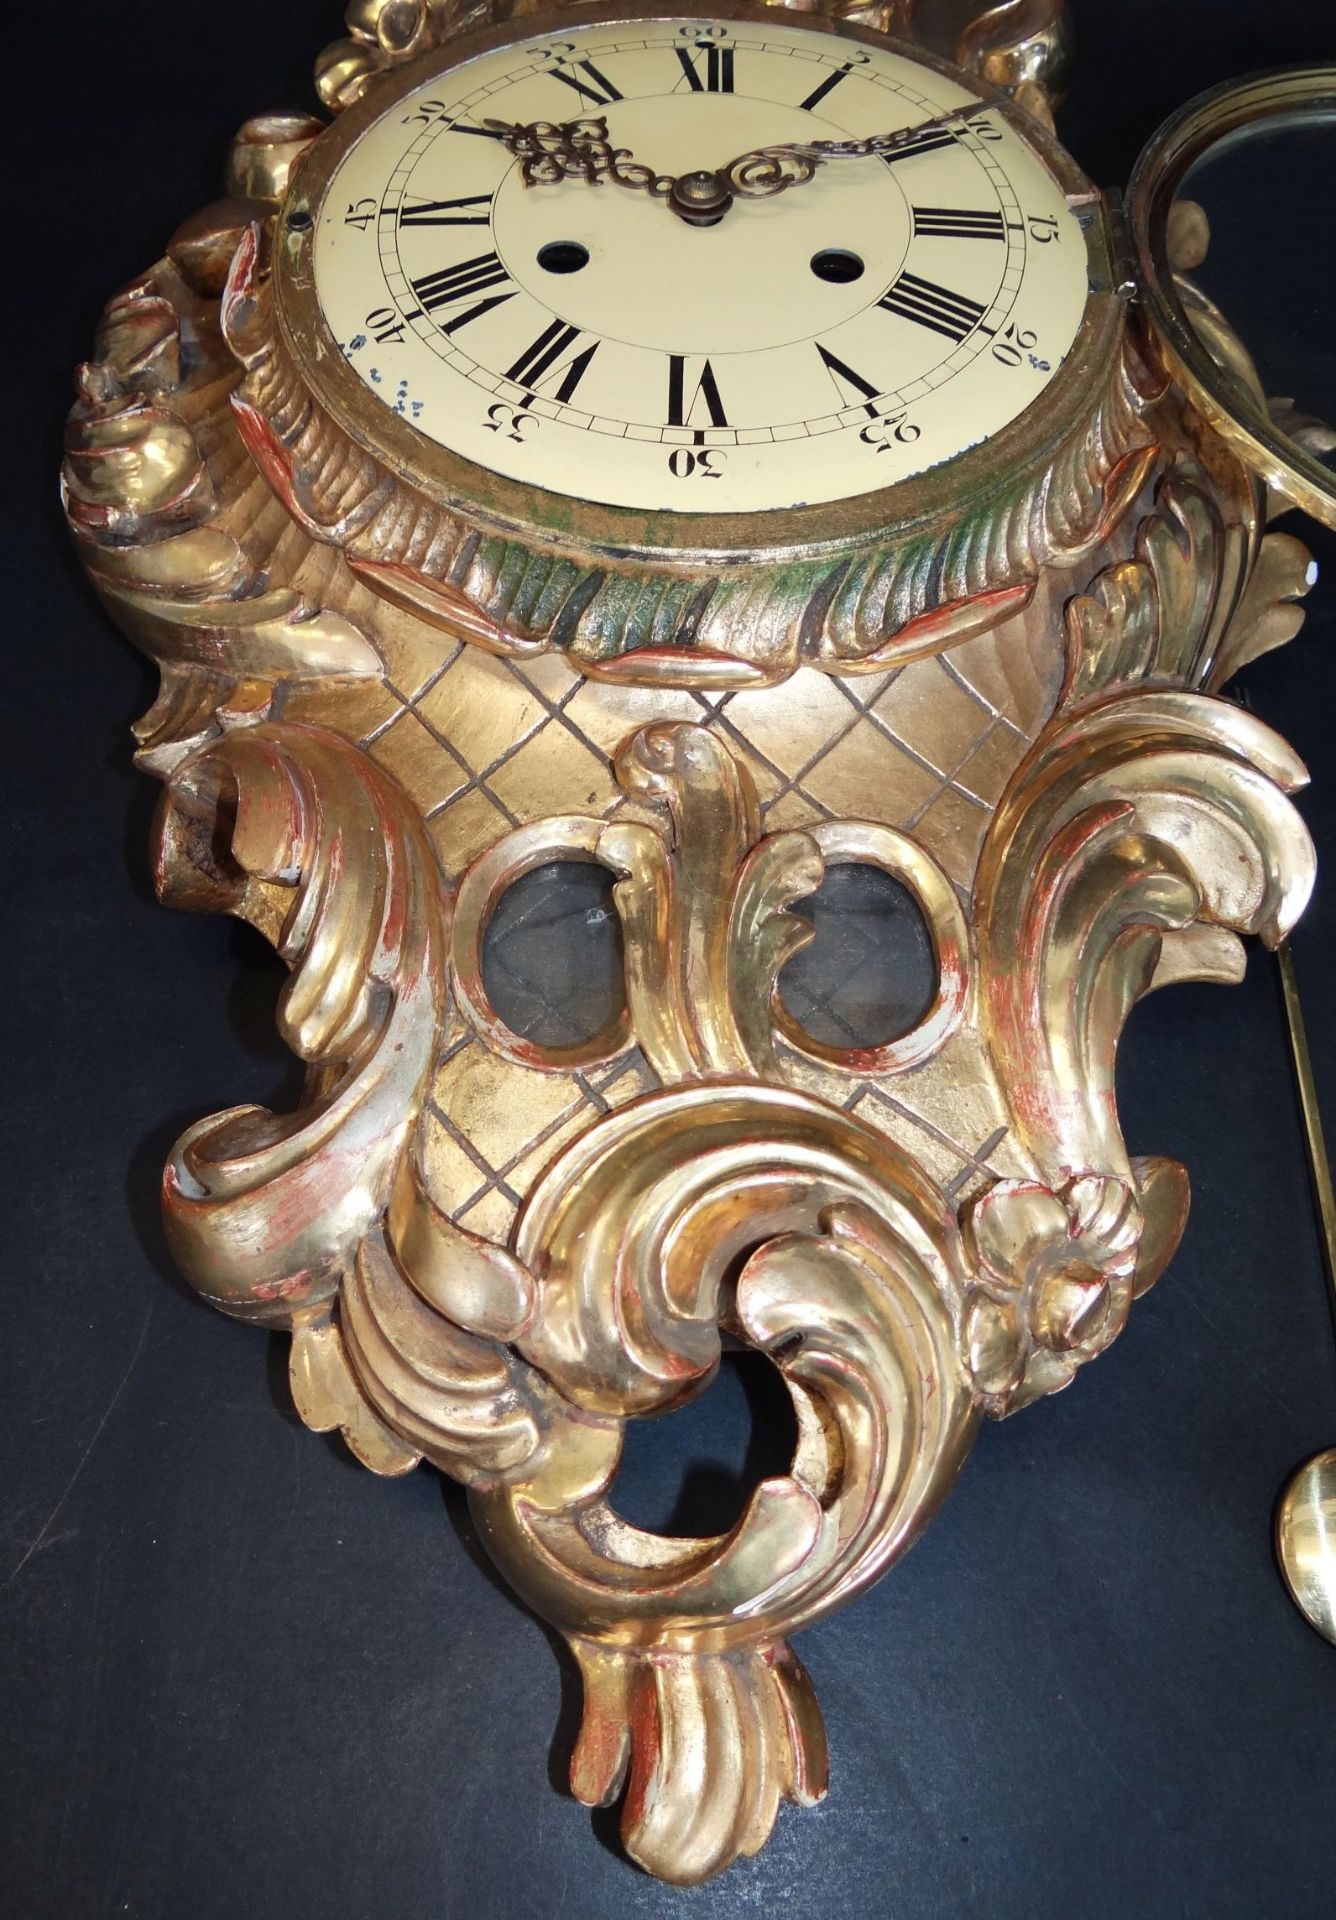 gr. Kartell-Uhr, Holz vergoldet, , H-62 cm, B-32 cm, guter Zustand, leider falsches , zu langes - Bild 5 aus 10